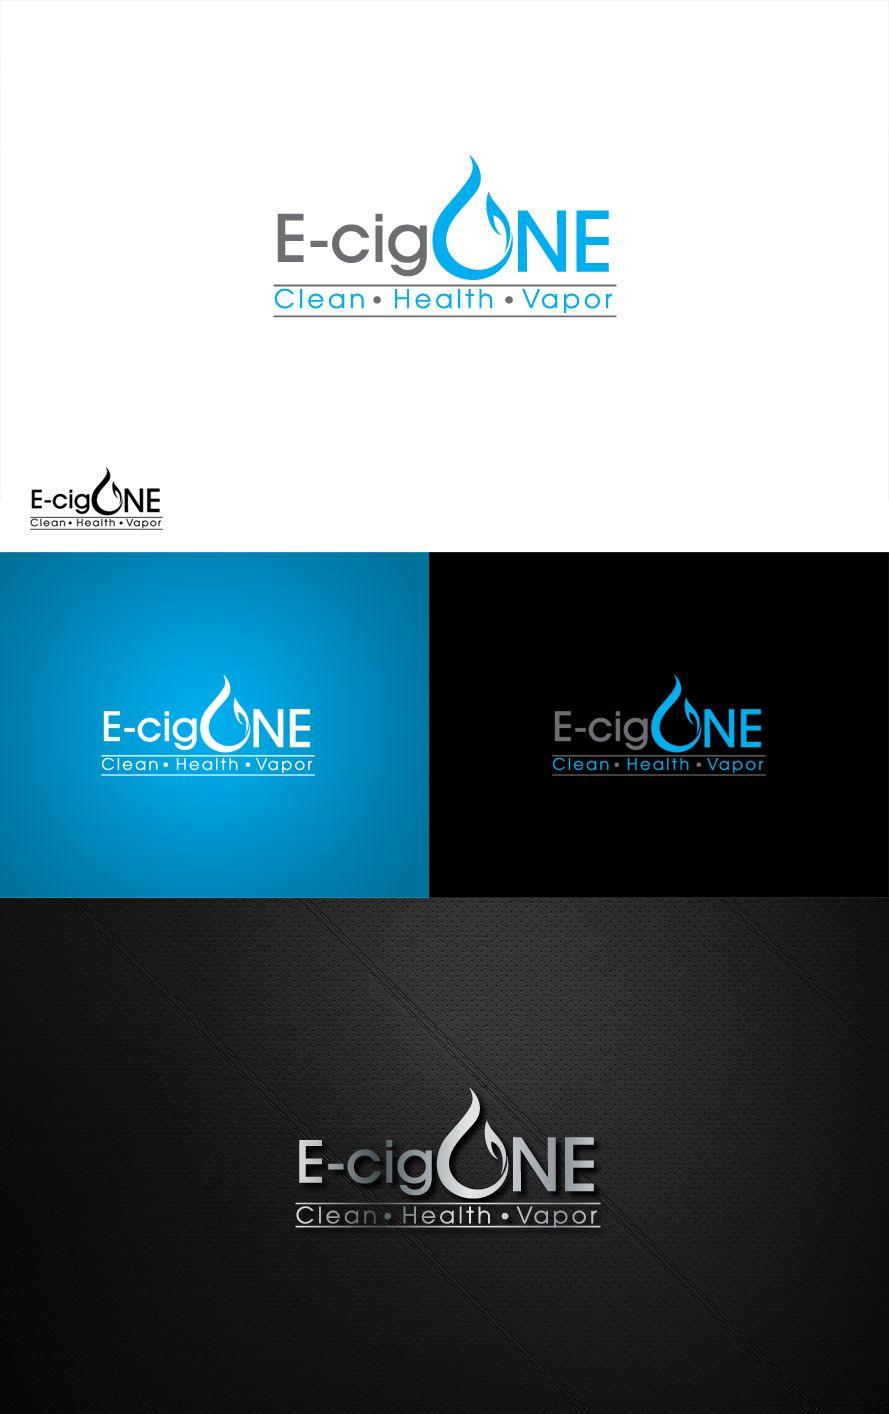 E-Cig Logo - Modern, Professional, Cigarette Logo Design for E-Cig One by ...